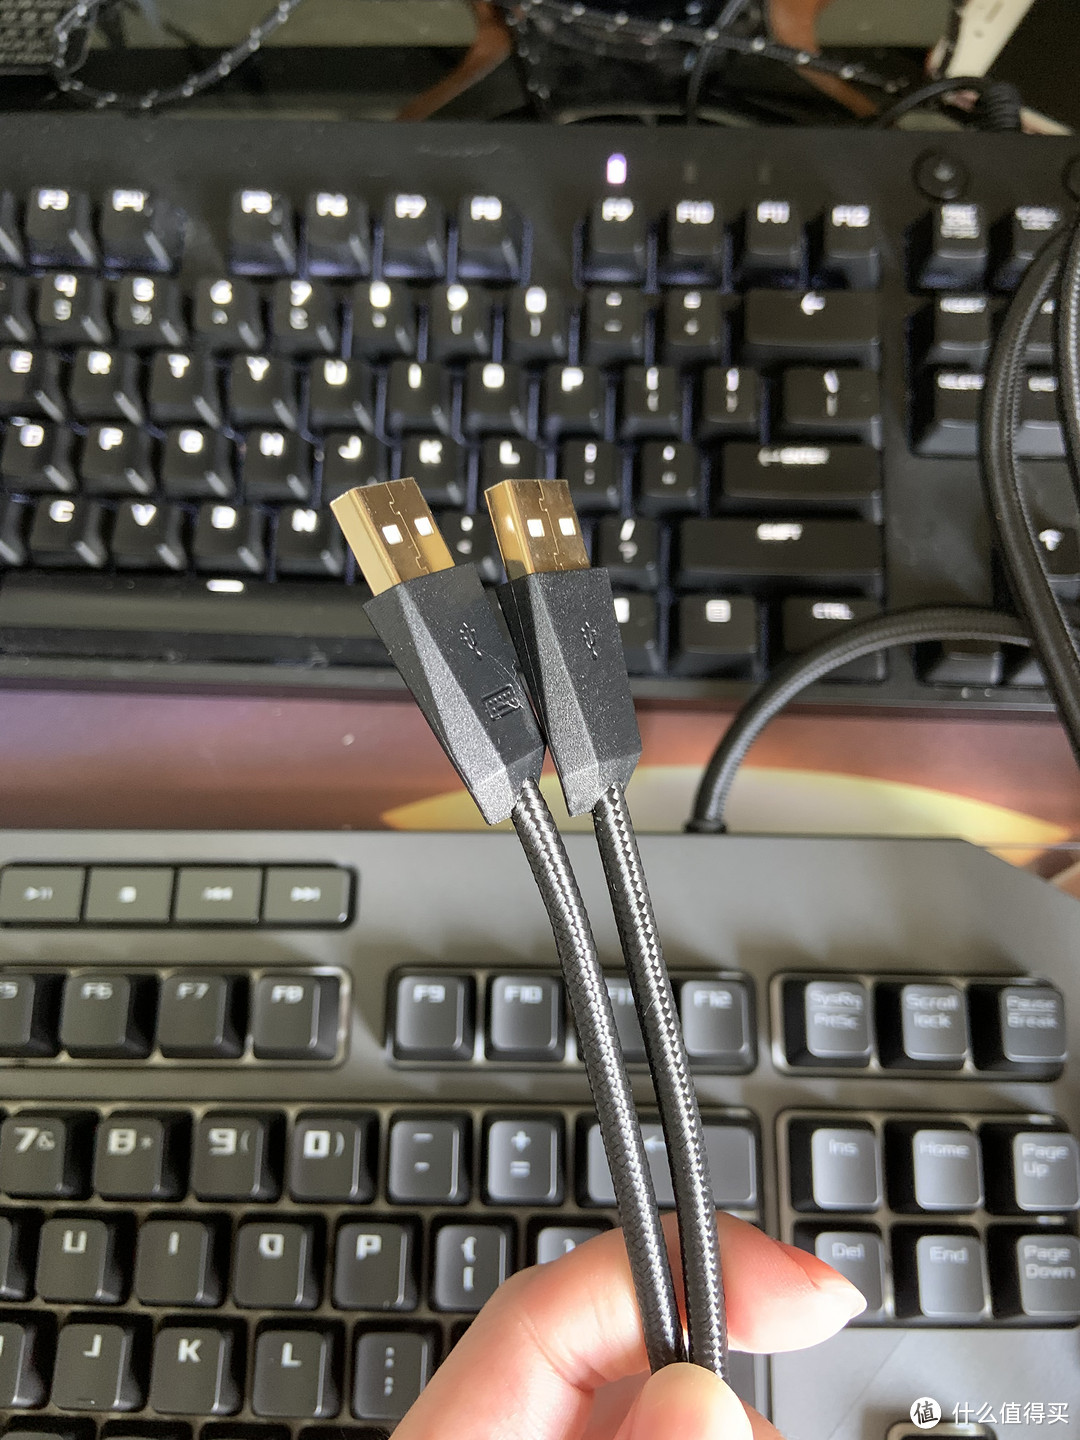 双USB插口，键盘上还有个USB口，可以接鼠标或优盘